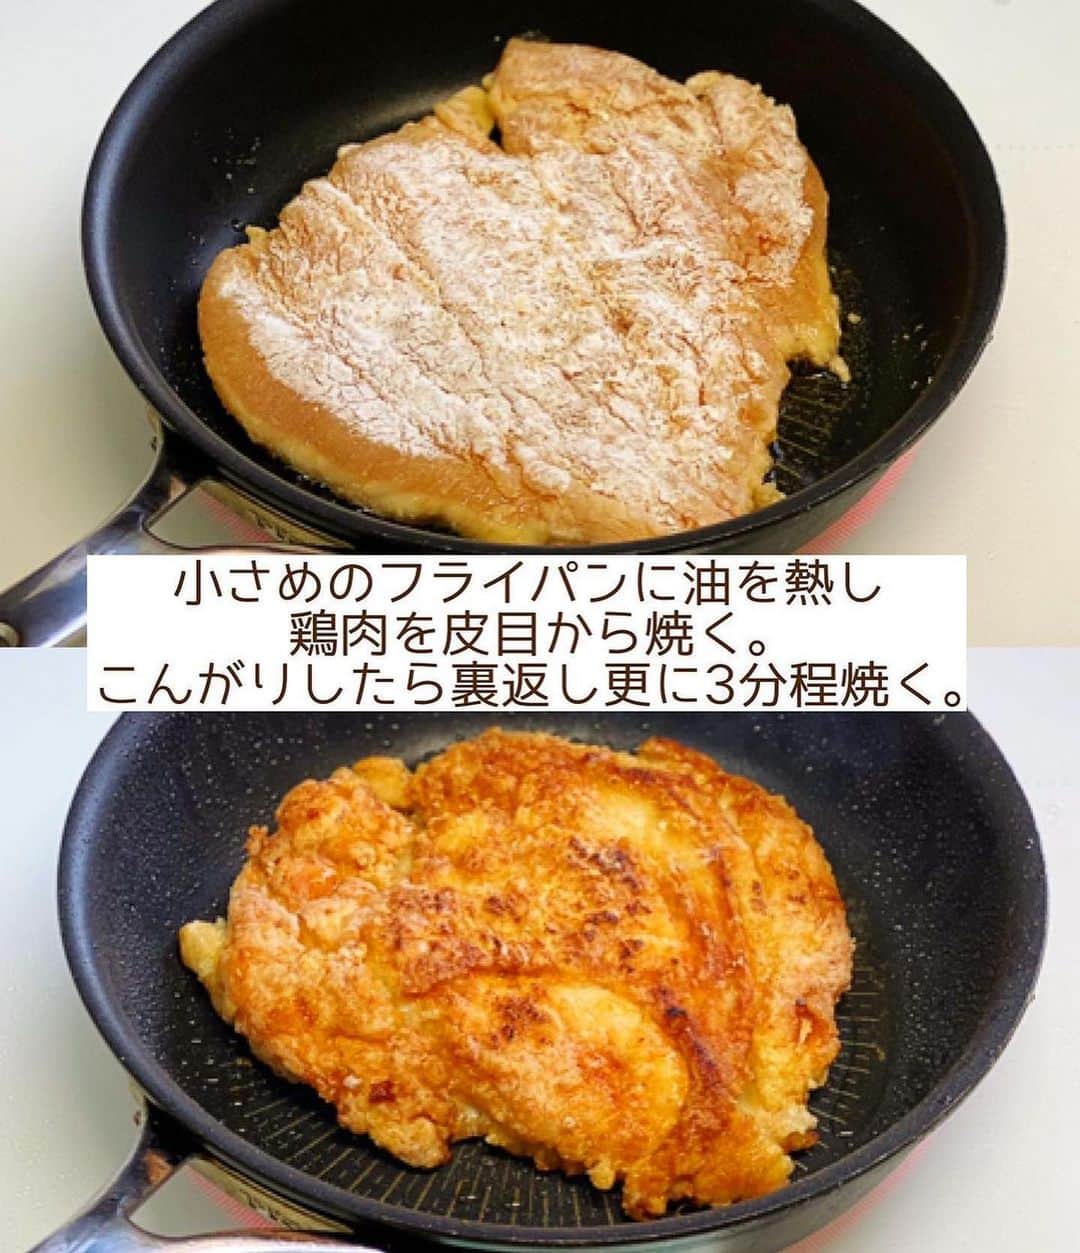 Mizuki【料理ブロガー・簡単レシピ】さんのインスタグラム写真 - (Mizuki【料理ブロガー・簡単レシピ】Instagram)「・コスパ抜群💕 ⁡ ［#レシピ ］ ーーーーーーーーーーーーーーーーーーーーー 鶏むね肉で！パリパリチキンのねぎだれがけ ーーーーーーーーーーーーーーーーーーーーー ⁡ ⁡ ⁡ おはようございます☺️ ⁡ 今日ご紹介させていただくのは 鶏むね肉のコスパおかず♩ \ パリパリチキンのねぎだれがけ / (再掲載✍️) ⁡ フライパンで焼いたむね肉に 風味満点のねぎだれをかけました💕 焼くだけでパリパリに仕上がり 食べ応えもアップしますよ〜😋 ⁡ 簡単にできてコスパ抜群なので よかったらお試しくださいね✨ ⁡ ⁡ ⁡ ⋱⋰ ⋱⋰ ⋱⋰ ⋱⋰ ⋱⋰ ⋱⋰ ⋱⋰ 📍簡単・時短・節約レシピ更新中  Threadsもこちらから▼ @mizuki_31cafe ⁡ 📍謎の暮らし＆変なライブ垢 @mizuki_kurashi ⋱⋰ ⋱⋰ ⋱⋰ ⋱⋰ ⋱⋰ ⋱⋰ ⋱⋰ ⁡ ⁡ ⁡ ＿＿＿＿＿＿＿＿＿＿＿＿＿＿＿＿＿＿＿ 【2人分】 鶏むね肉...大1枚(300g) ●酒・醤油...各小1 片栗粉...適量 サラダ油...大1 ☆長ねぎ(みじん切り)...10cm ☆生姜(みじん切り)...1/2かけ ☆醤油・酢...各大1.5 ☆砂糖・ごま油...各小2 ⁡ 1.☆を混ぜてねぎだれを作る。鶏肉は厚みを開いてフォークで刺し、●を揉み込み片栗粉をまぶす。 2.小さめのフライパンにサラダ油を中火で熱し、鶏肉を皮目から焼く。こんがりしたら裏返し、更に3分ほど焼いて火を通す(時々フライ返しで押さえるとよりパリパリに♩)。 3.2を食べやすい大きさに切って器に盛り、1のねぎだれをかける。 ￣￣￣￣￣￣￣￣￣￣￣￣￣￣￣￣￣￣￣ ⁡ ⁡ 《ポイント》 ♦︎鶏肉は厚みが半分くらいになるよう観音開きにしています♩真ん中の身の厚い部分に包丁を入れ、左右に開くと◎ ♦︎片栗粉はたっぷりまぶすとパリパリに仕上がります♩ ♦︎鶏肉はこんがり(しっかり)焼き色が付いてから裏返して下さい♩ ♦︎直径22cmのフライパンを使用しました♩小さなフライパンに鶏肉をドーンと入れると油の嵩が上がります♩ ⁡ ⁡ ⁡ ⁡ ⁡ ⁡ 💬💬💬 (いつできるかわからない) 本の撮影がはじまりました🌸 しばらくの間 投稿したり、できなかったり お返事できないこともあると思いますが よろしくお願いいたします🙇‍♀️✨ ⁡ ⁡ ⁡ ⁡ ⁡ ⋱⋰ ⋱⋰ ⋱⋰ ⋱⋰ ⋱⋰ ⋱⋰ ⋱⋰  愛用している調理器具・器など   #楽天ROOMに載せてます ‎𐩢𐩺  (ハイライトから飛べます🕊️) ⋱⋰ ⋱⋰ ⋱⋰ ⋱⋰ ⋱⋰ ⋱⋰ ⋱⋰ ⁡ ⁡ ⁡ ⁡ ⁡ ✼••┈┈┈┈┈••✼••┈┈┈┈┈••✼ 今日のごはんこれに決まり！ ‎𓊆#Mizukiのレシピノート 500品𓊇 ✼••┈┈┈┈┈••✼••┈┈┈┈┈••✼ ⁡ ˗ˏˋ おかげさまで25万部突破 ˎˊ˗ 料理レシピ本大賞準大賞を受賞しました✨ ⁡ 6000点の中からレシピを厳選し まさかの【500レシピ掲載】 肉や魚のメインおかずはもちろん 副菜、丼、麺、スープ、お菓子 ハレの日のレシピ、鍋のレシピまで 全てこの一冊で完結 𓌉◯𓇋 (全国の書店・ネット書店で発売中) ⁡ ⁡ ⁡ ⁡ ⁡ ⁡ #パリパリチキンのねぎだれがけm #パリパリチキン  #鶏むね肉 #鶏むね肉レシピ #ねぎだれ  #ヘルシー  #焼くだけ #節約料理  #簡単料理  #時短料理 #mizukiレシピ  #時短レシピ #節約レシピ #簡単レシピ」10月7日 7時14分 - mizuki_31cafe